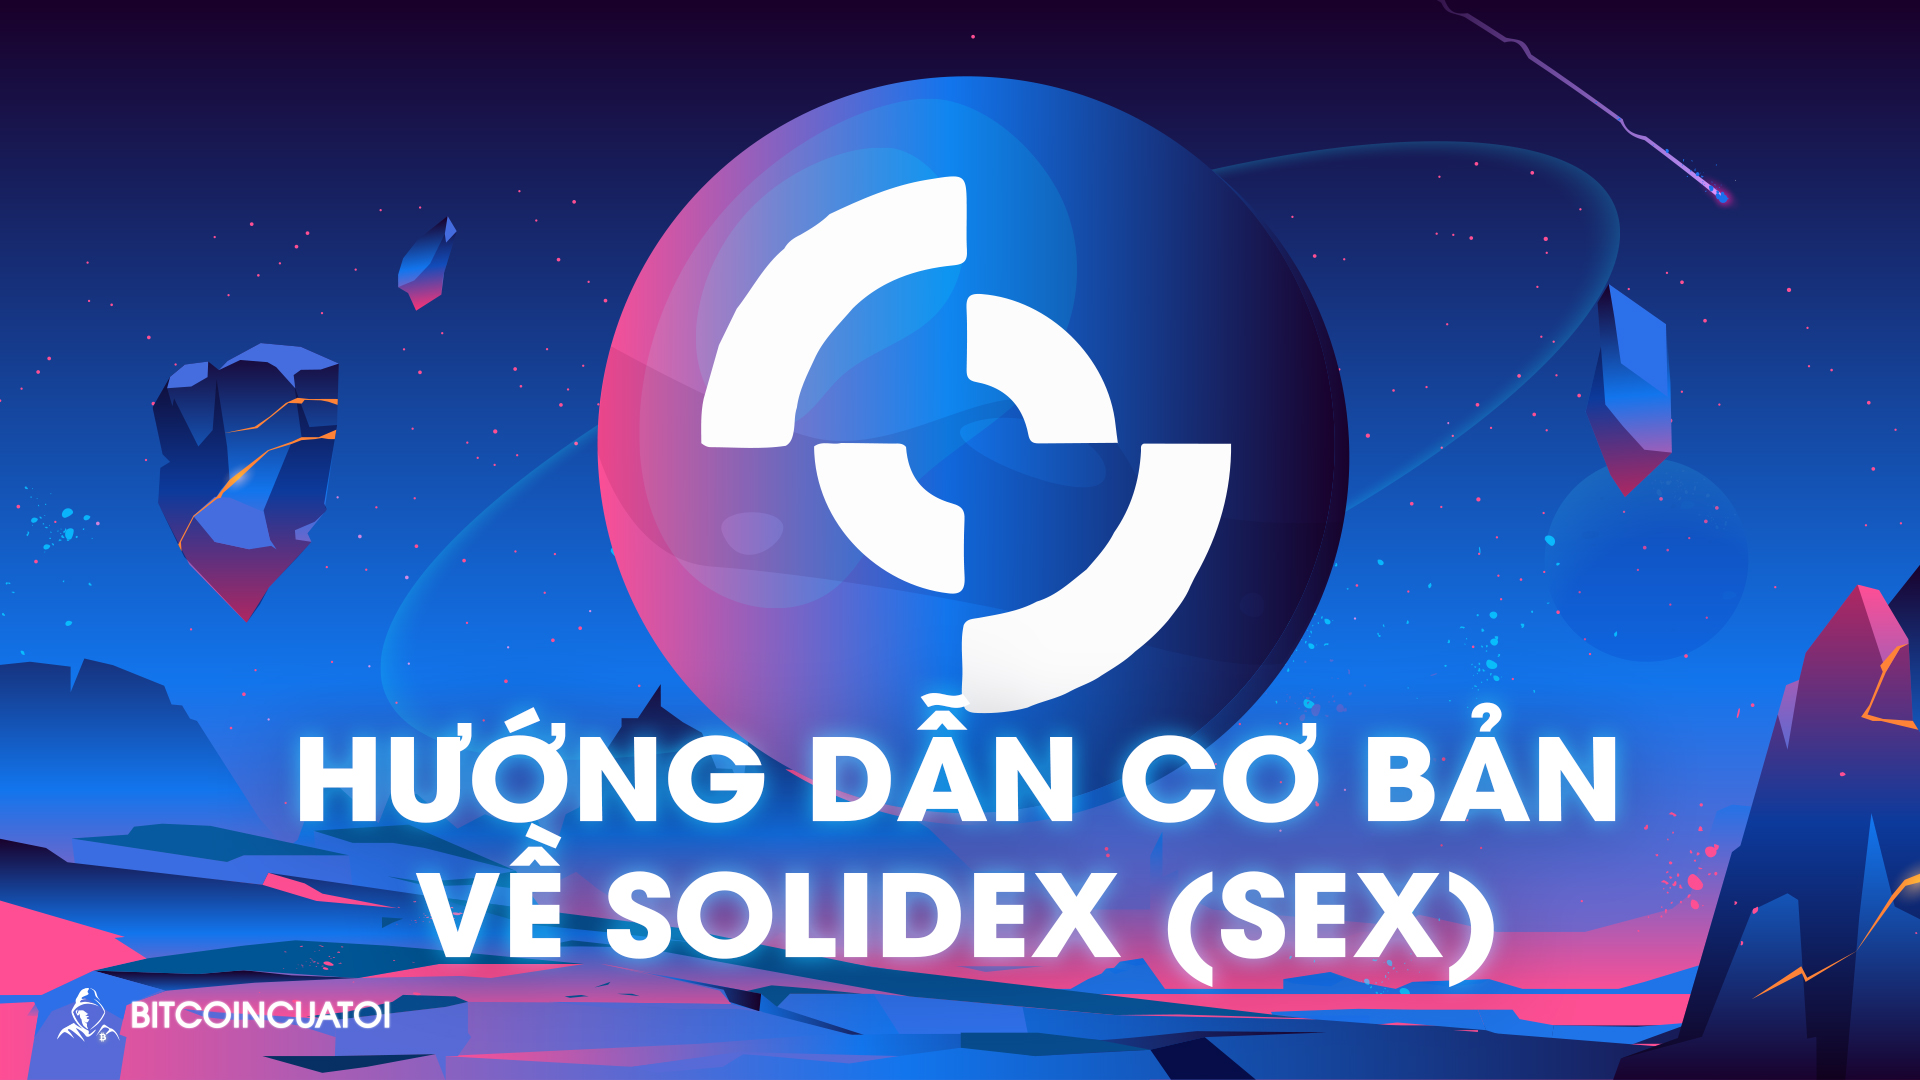 Hướng dẫn cơ bản về Solidex (SEX)